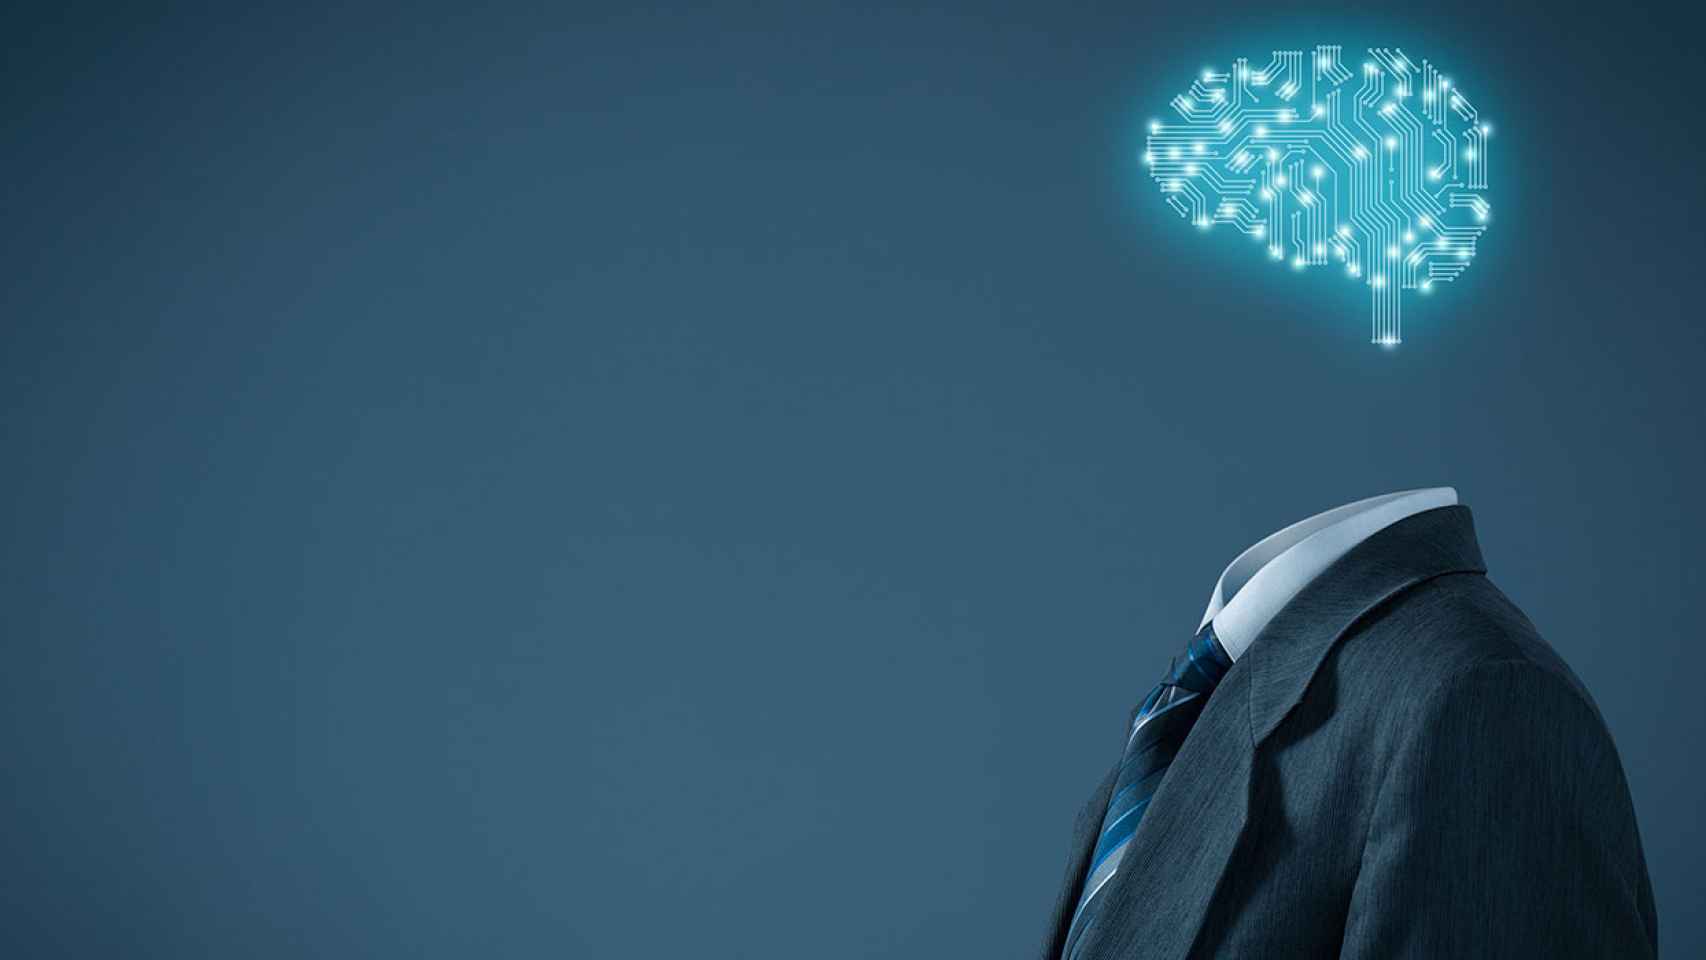 Solo dos de cada diez empresas españolas consideran “estratégica” la inteligencia artificial